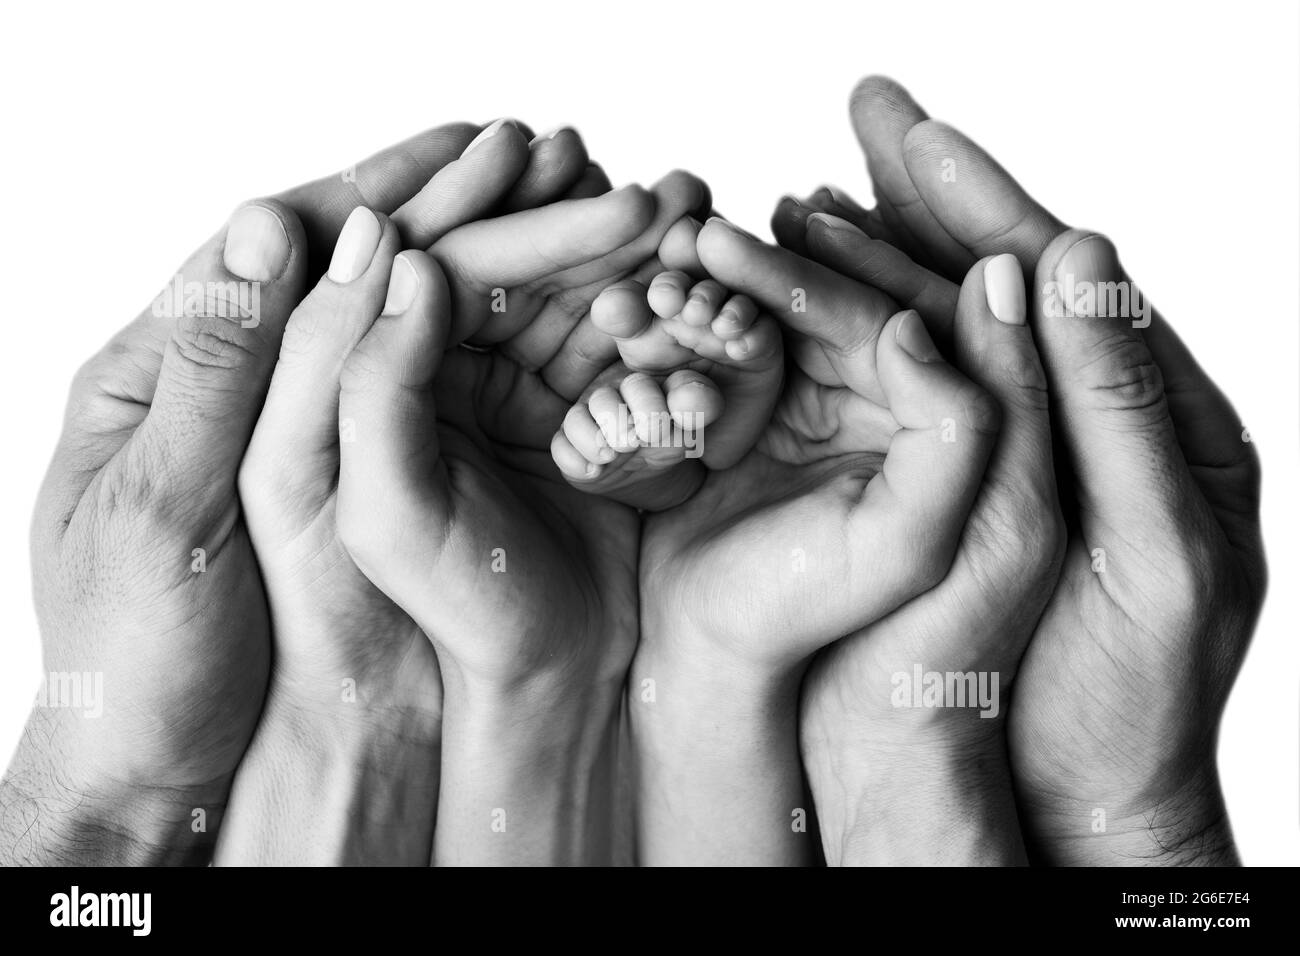 Les mains de la mère, du père et de l'enfant plus âgé tiennent les pieds du nouveau-né. Joli portrait de famille avec bébé. Photographie en noir et blanc. Banque D'Images